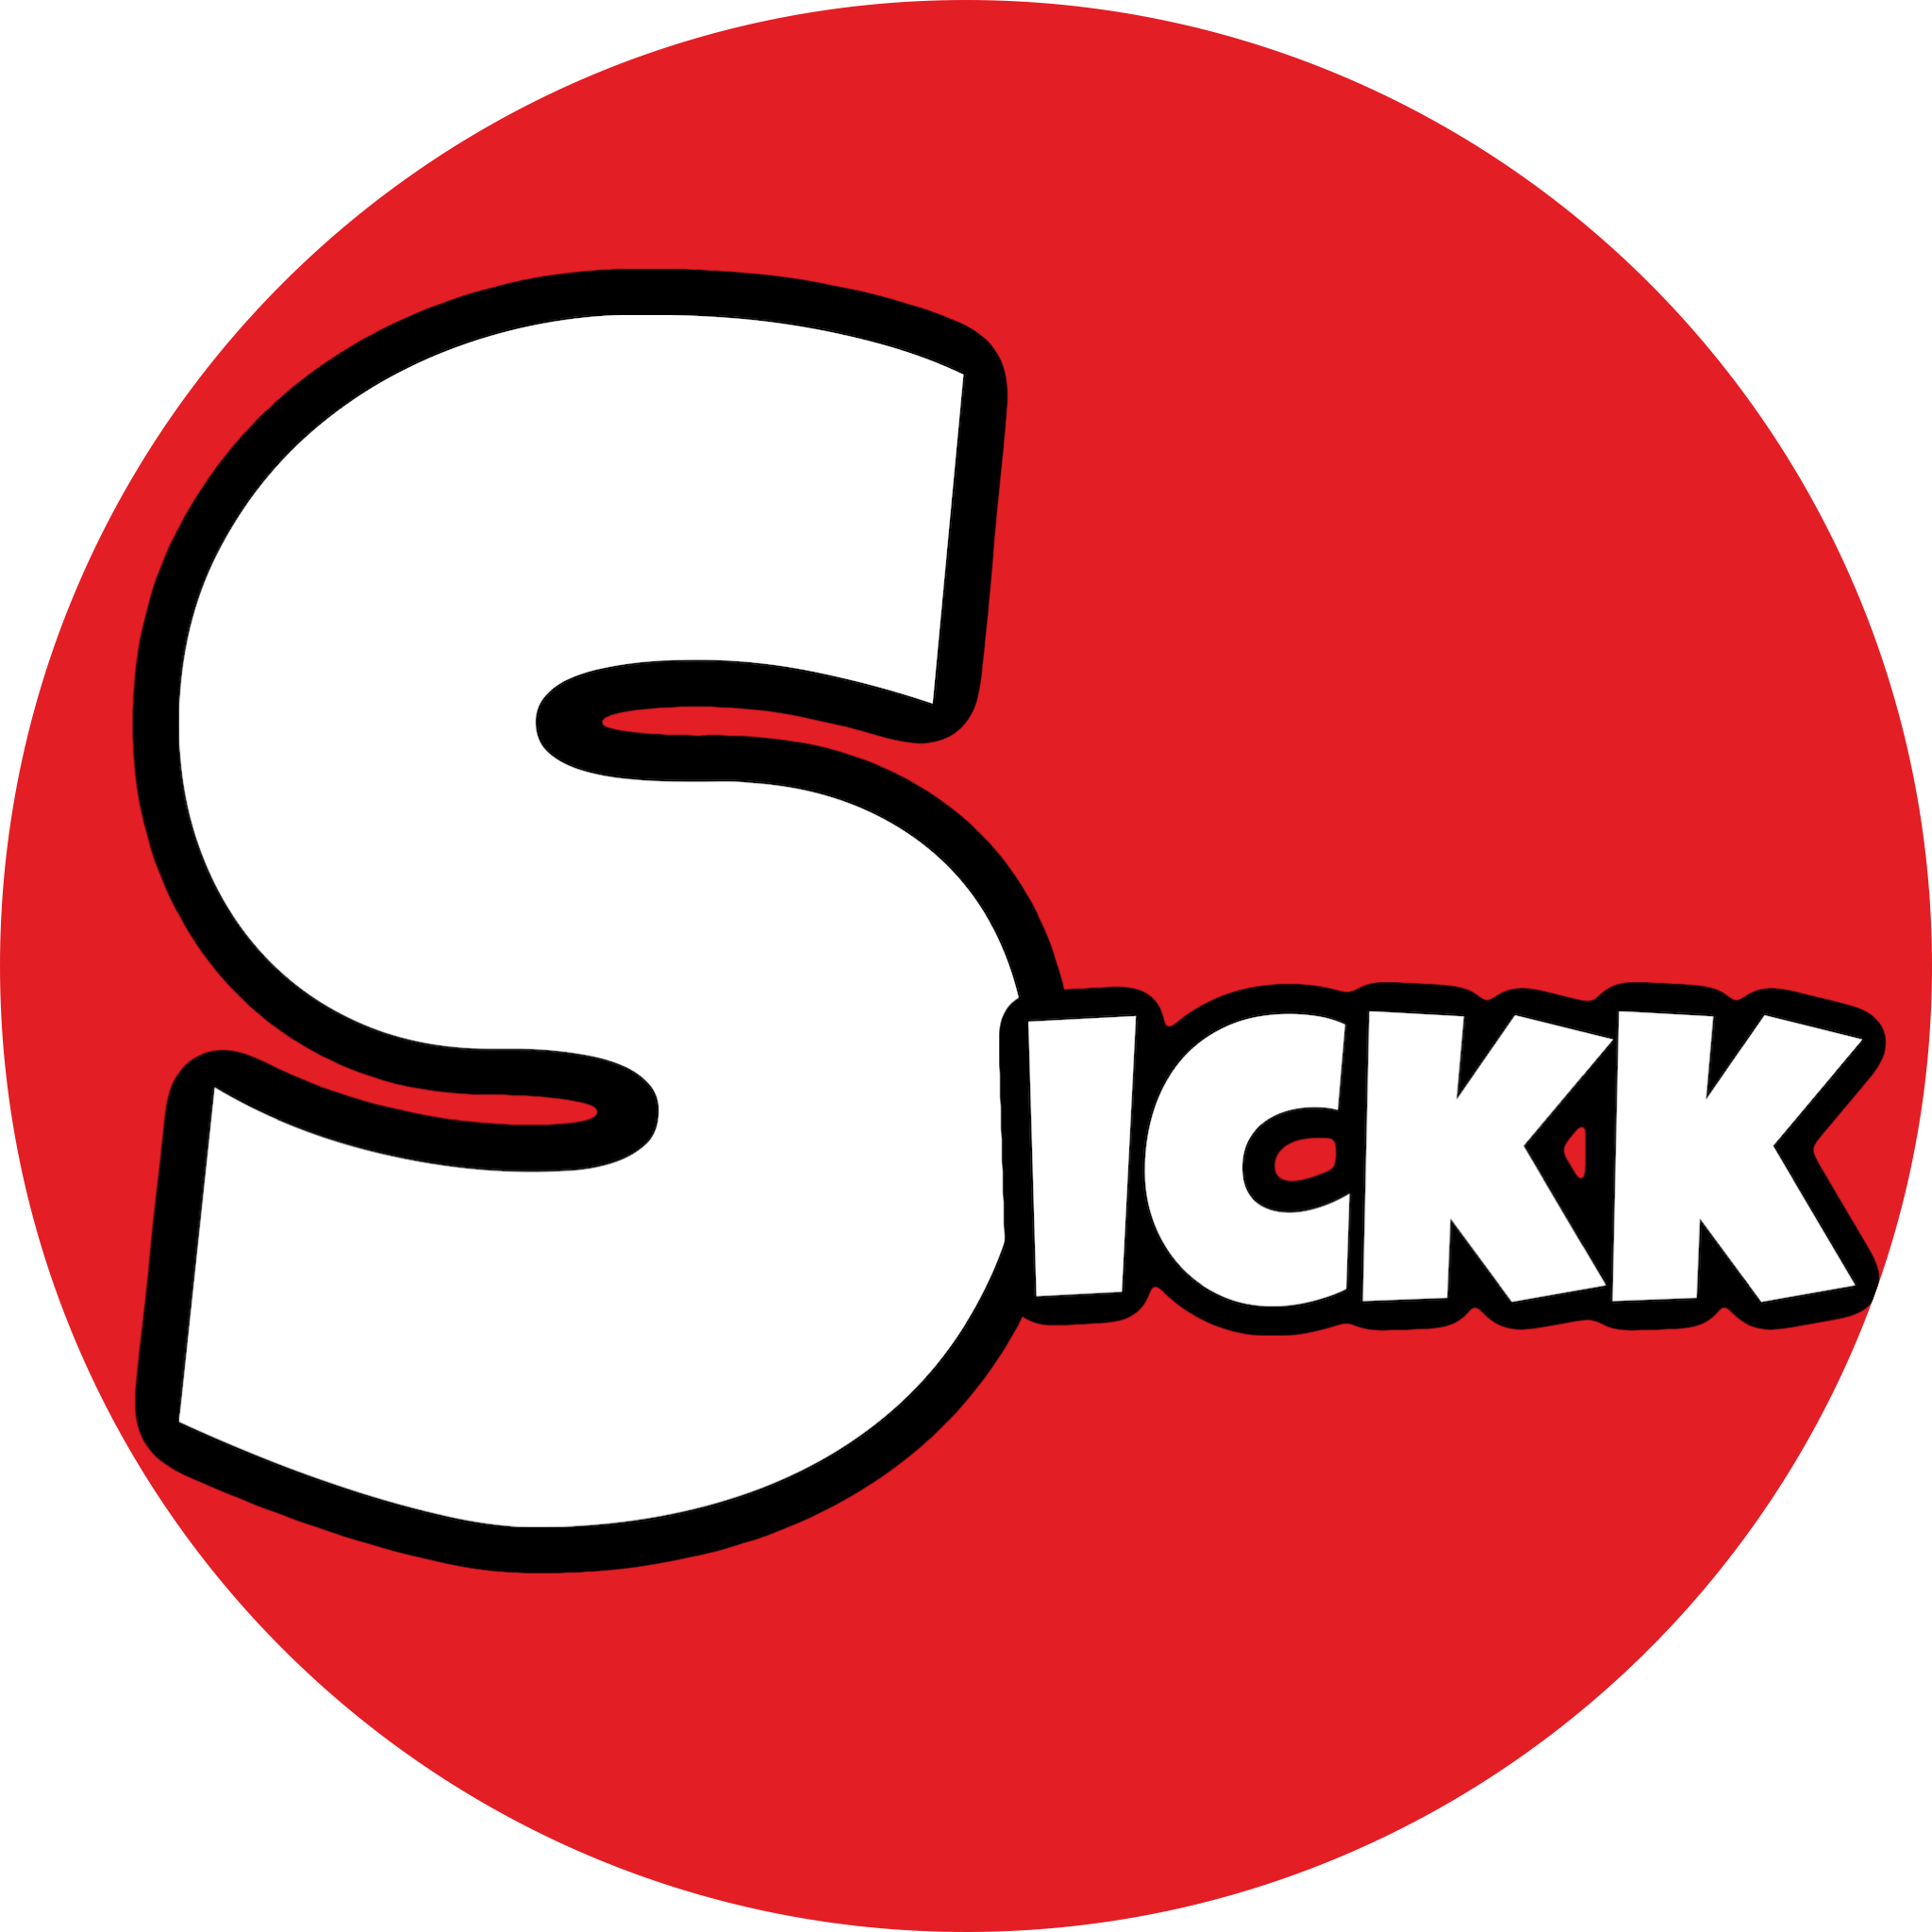 SickkServices